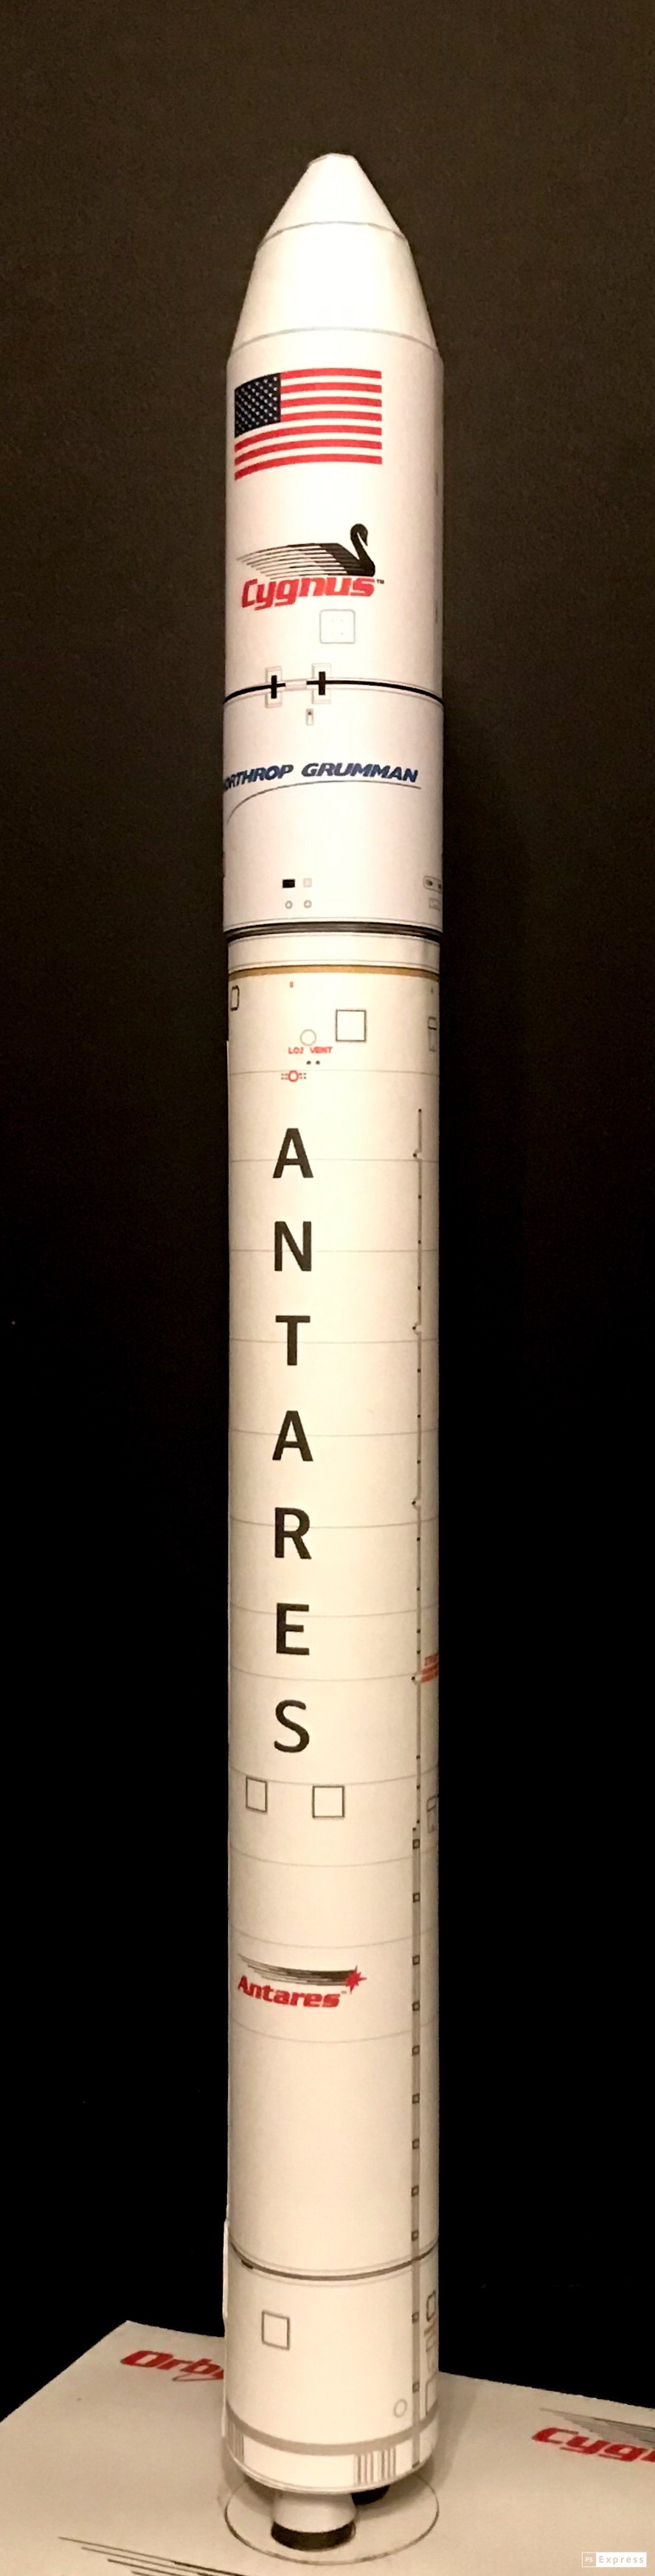 Antares NG-12-image